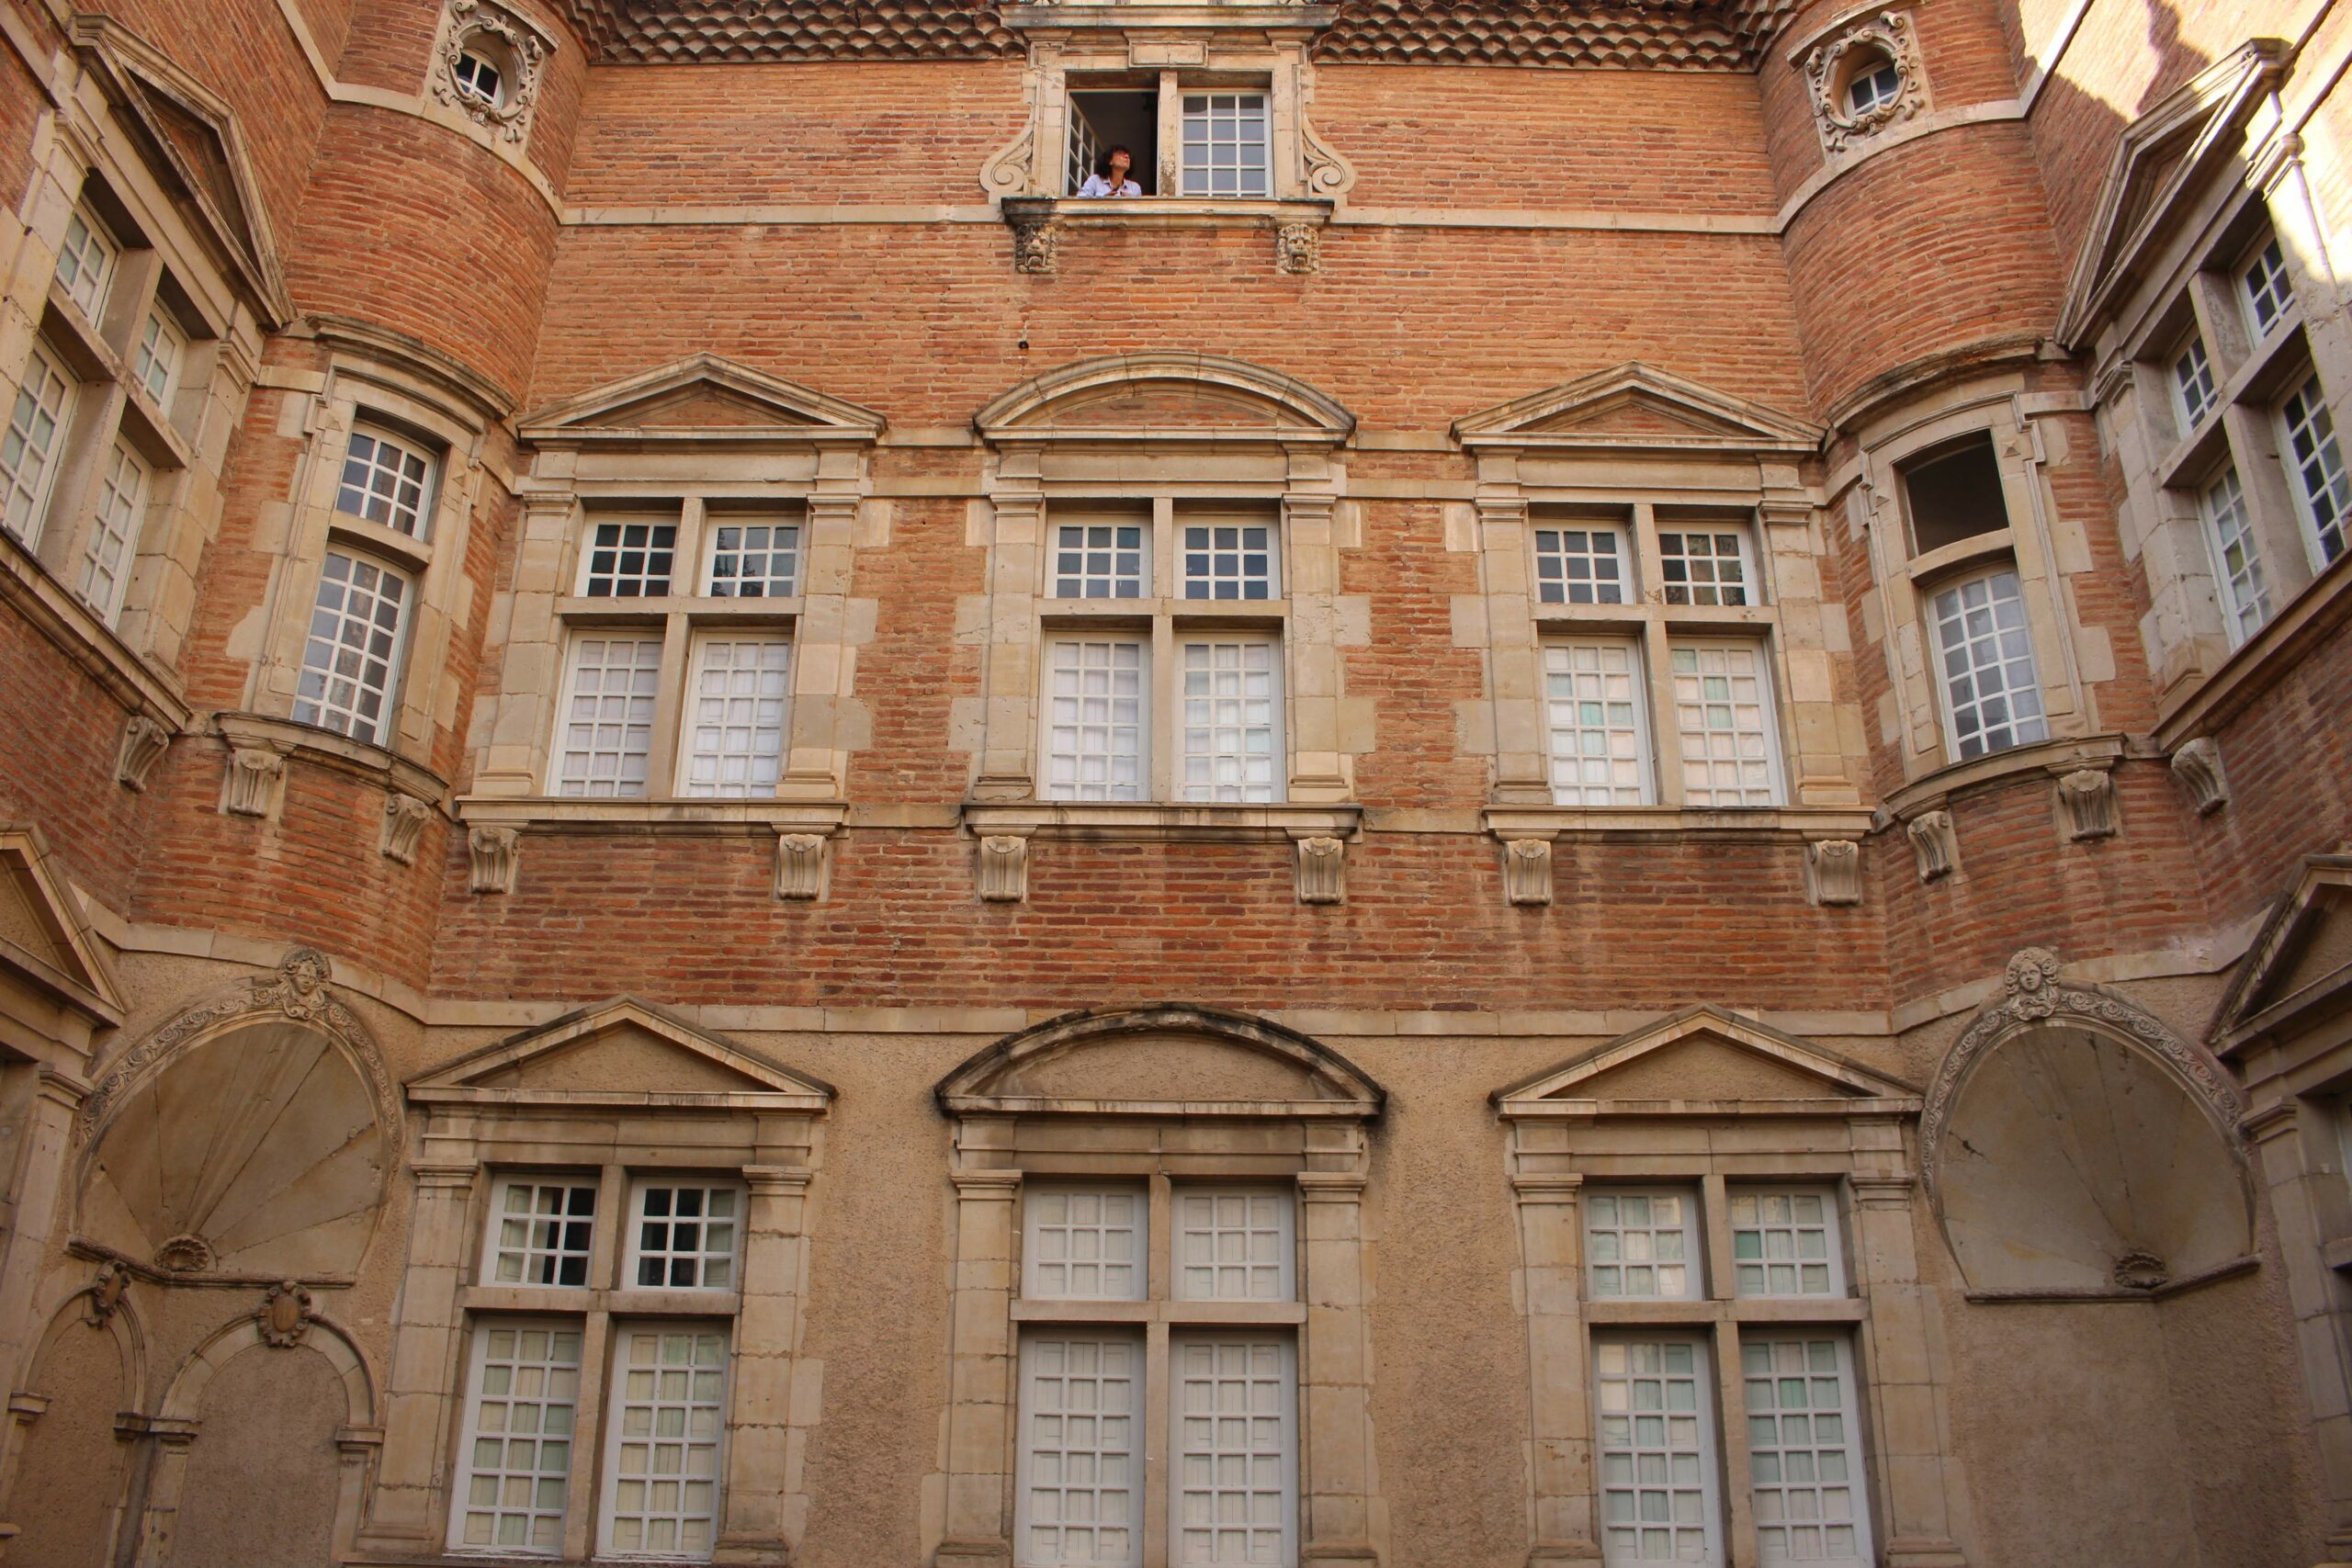 Hôtel de Nayrac - Réfection des façades et des couvertures (compris charpentes) - Castres (81)